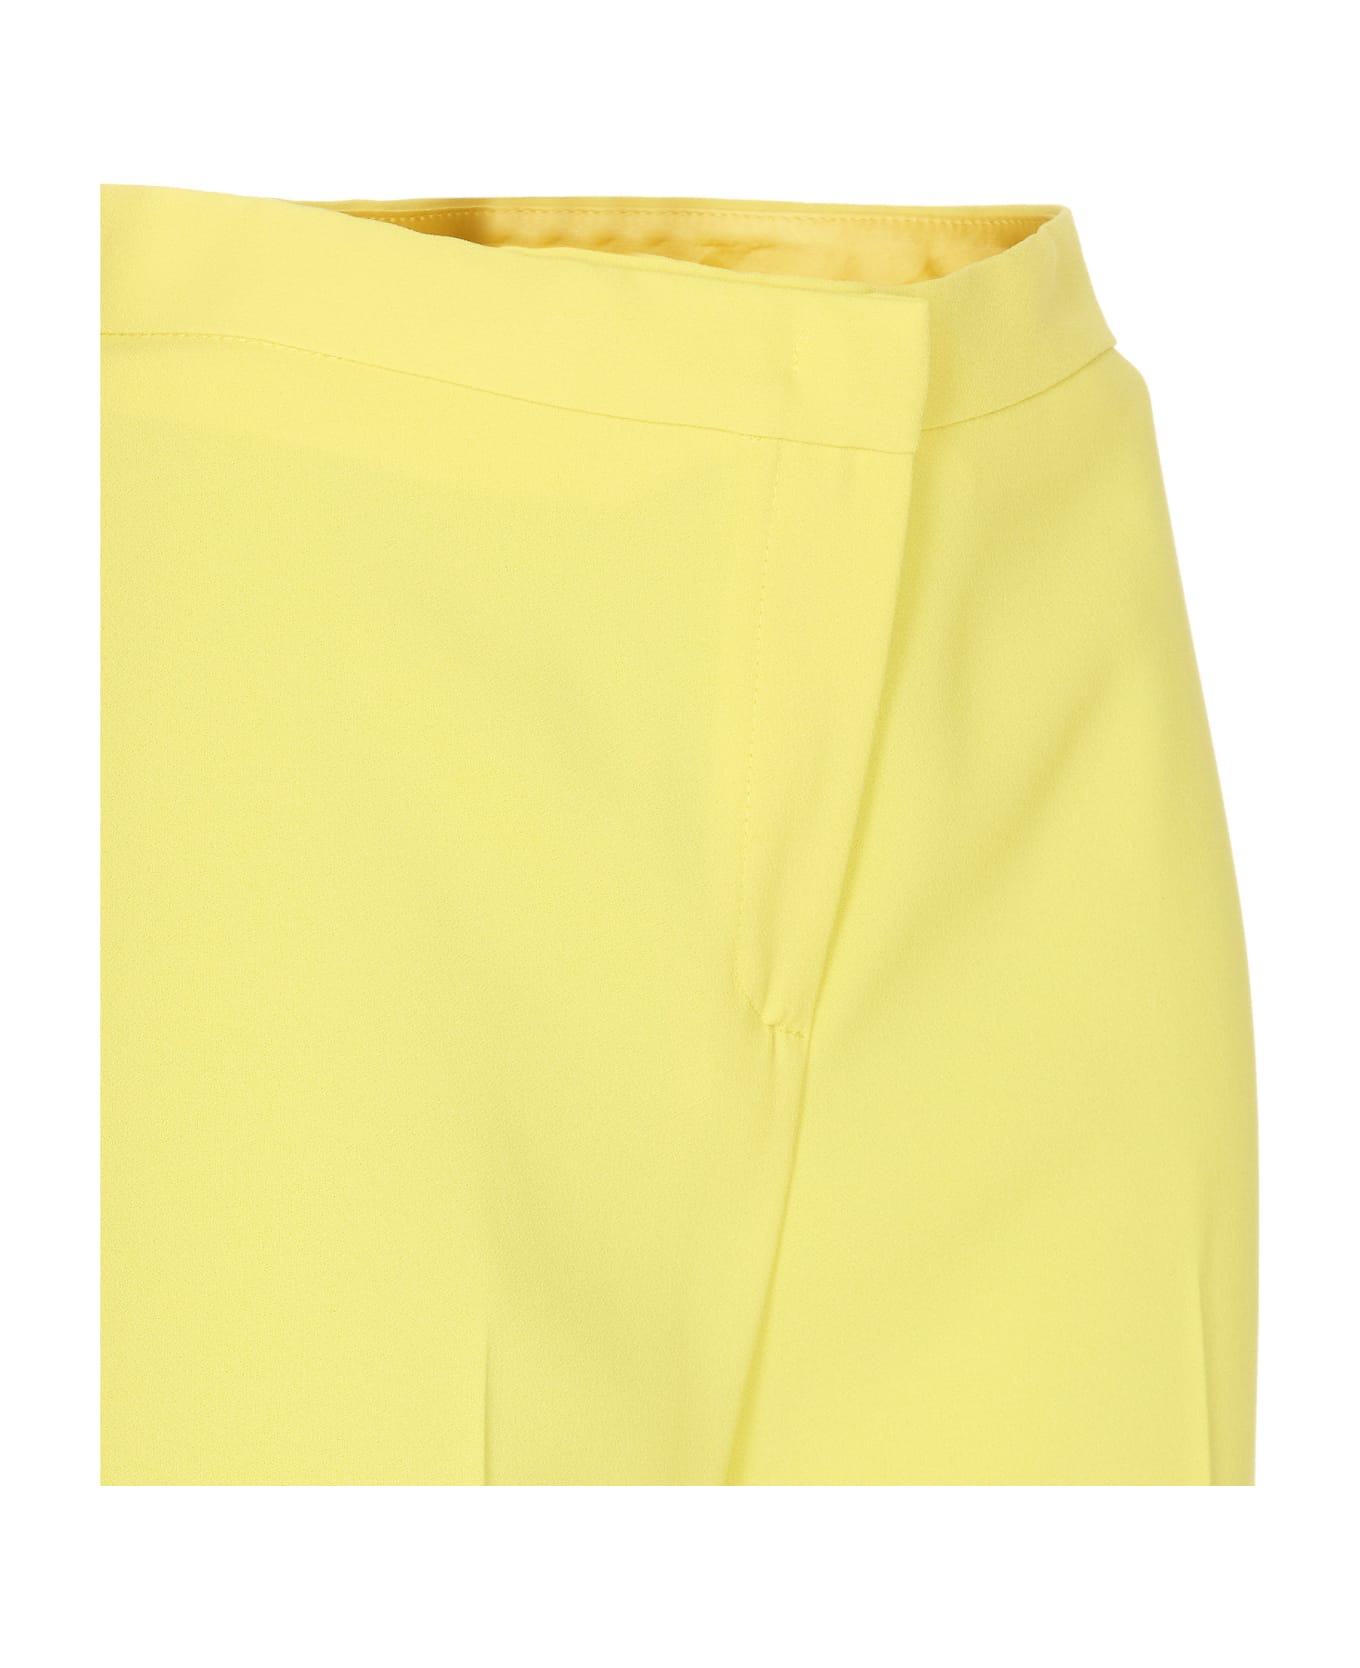 Pinko Hulka Pants - Yellow